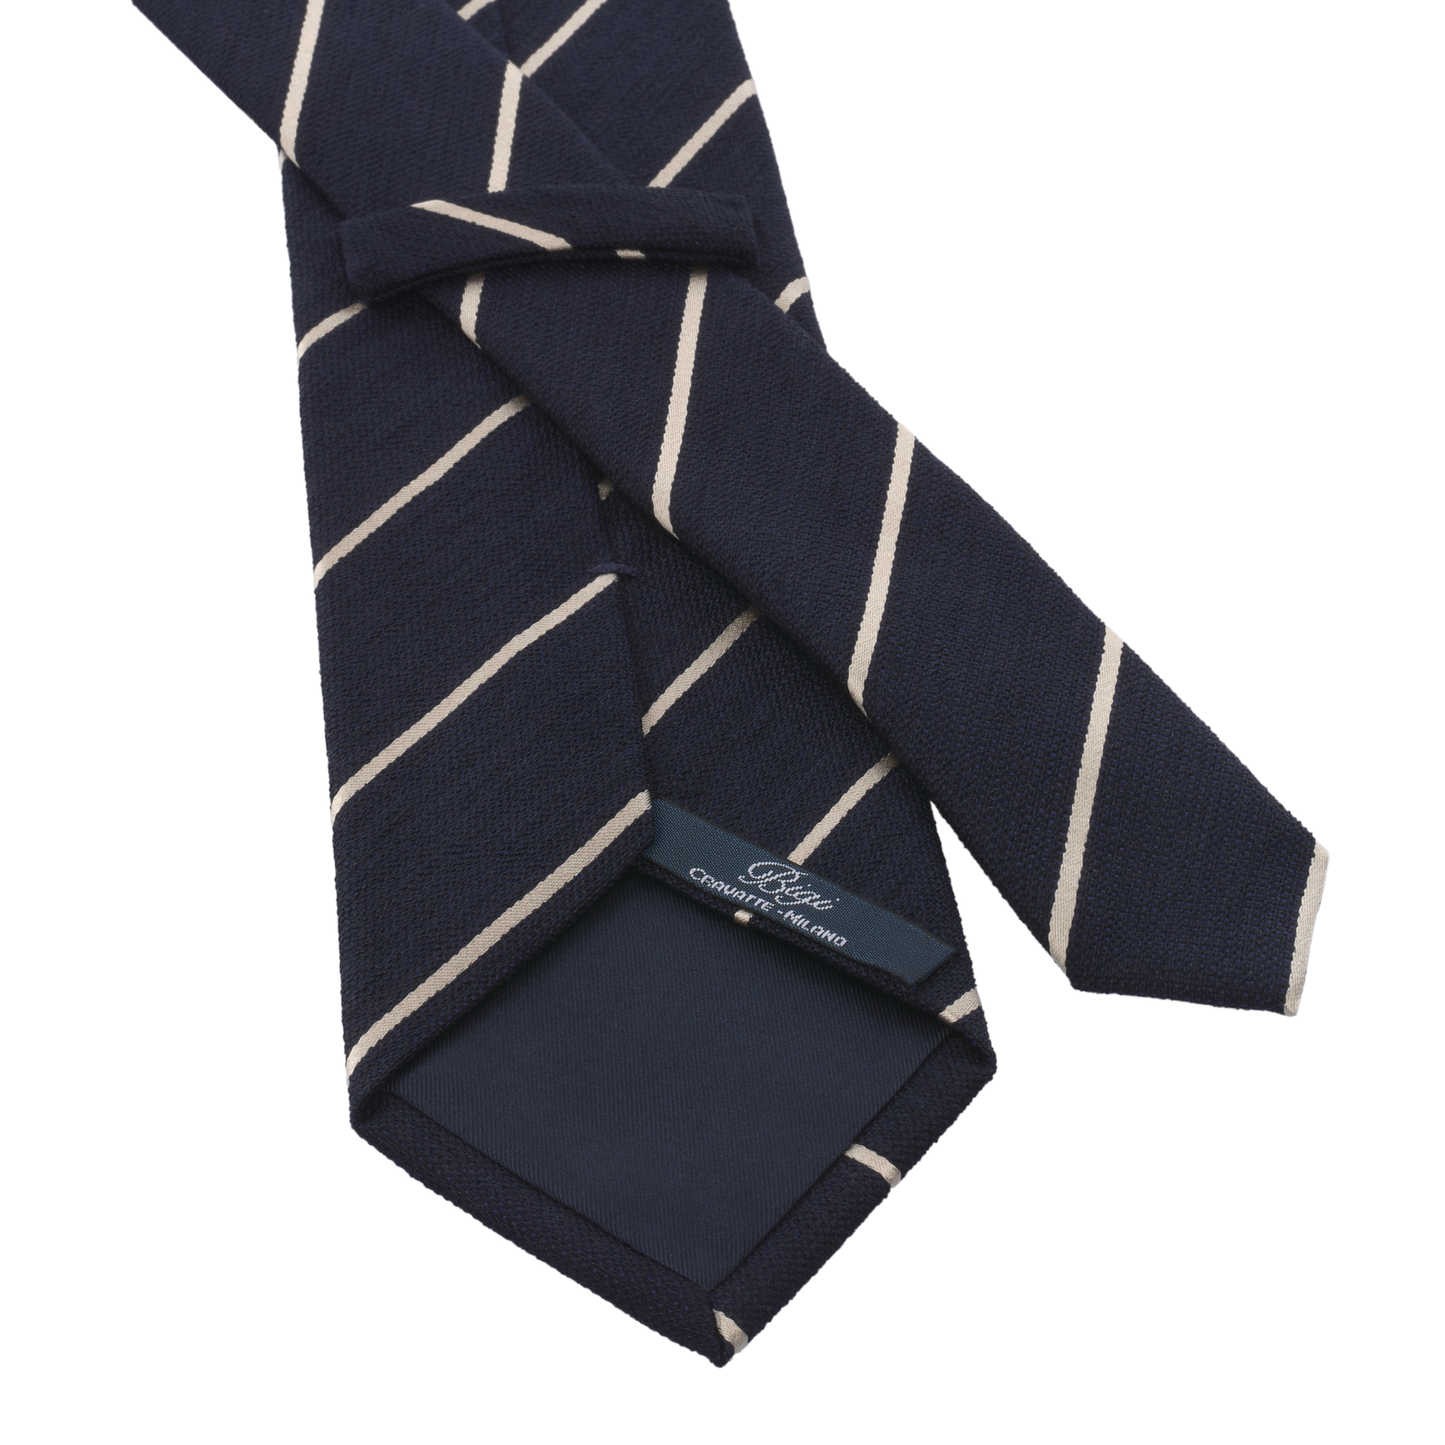 Regimental Silk Tie in Dark Blue and White